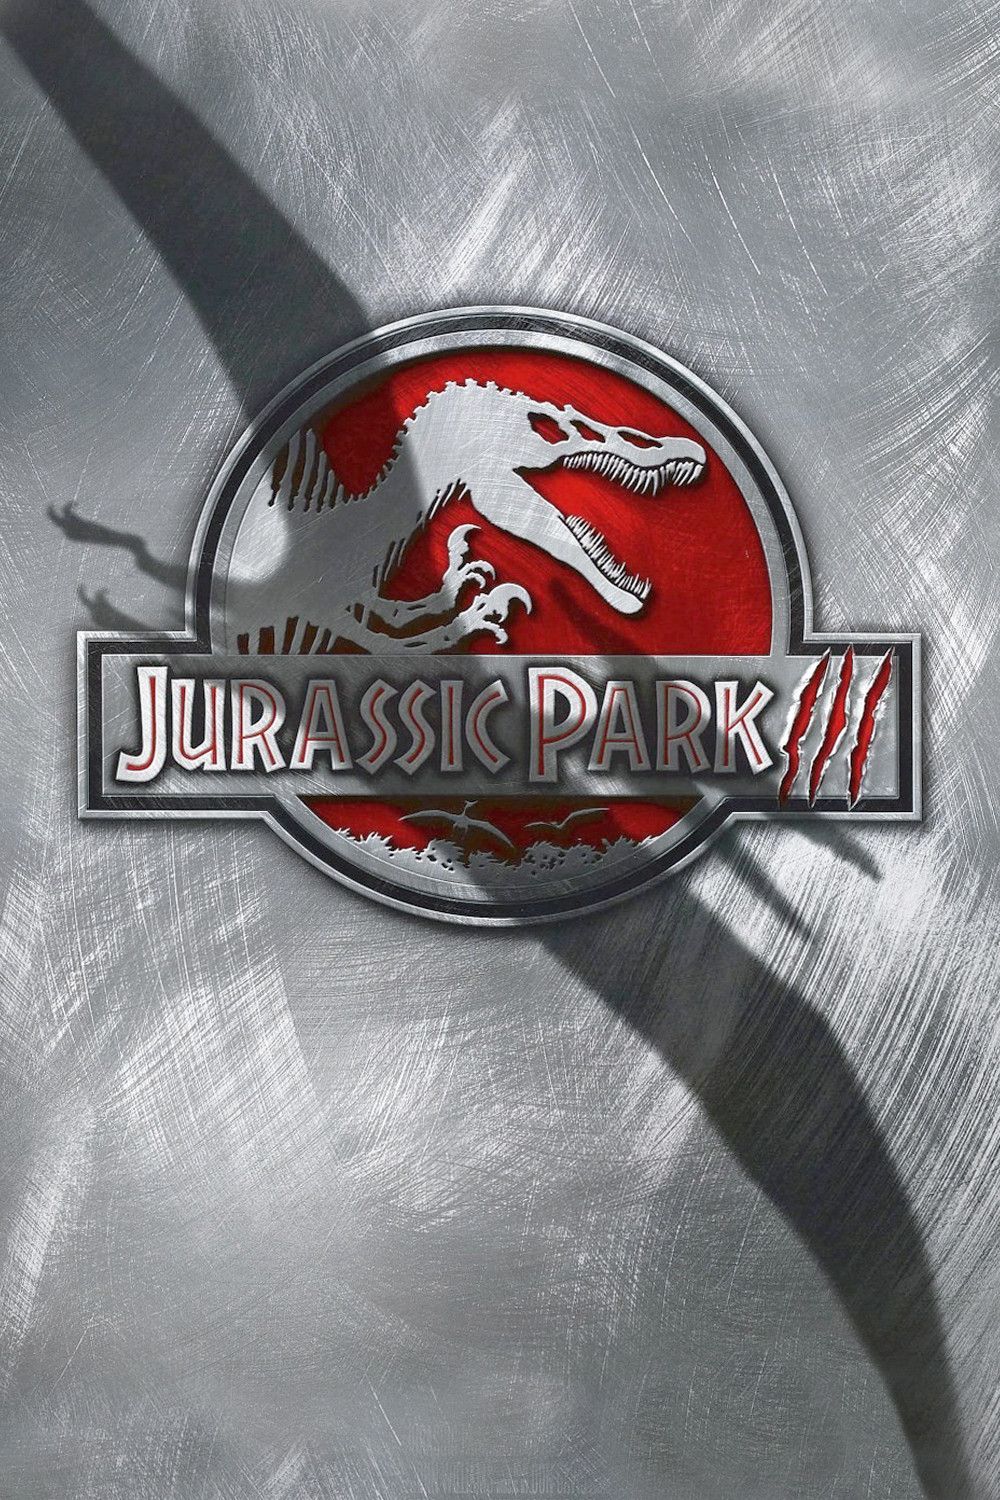 ดูหนังออนไลน์ฟรี Jurassic Park 3 (2001) จูราสสิค ปาร์ค 3 ไดโนเสาร์พันธุ์ดุ